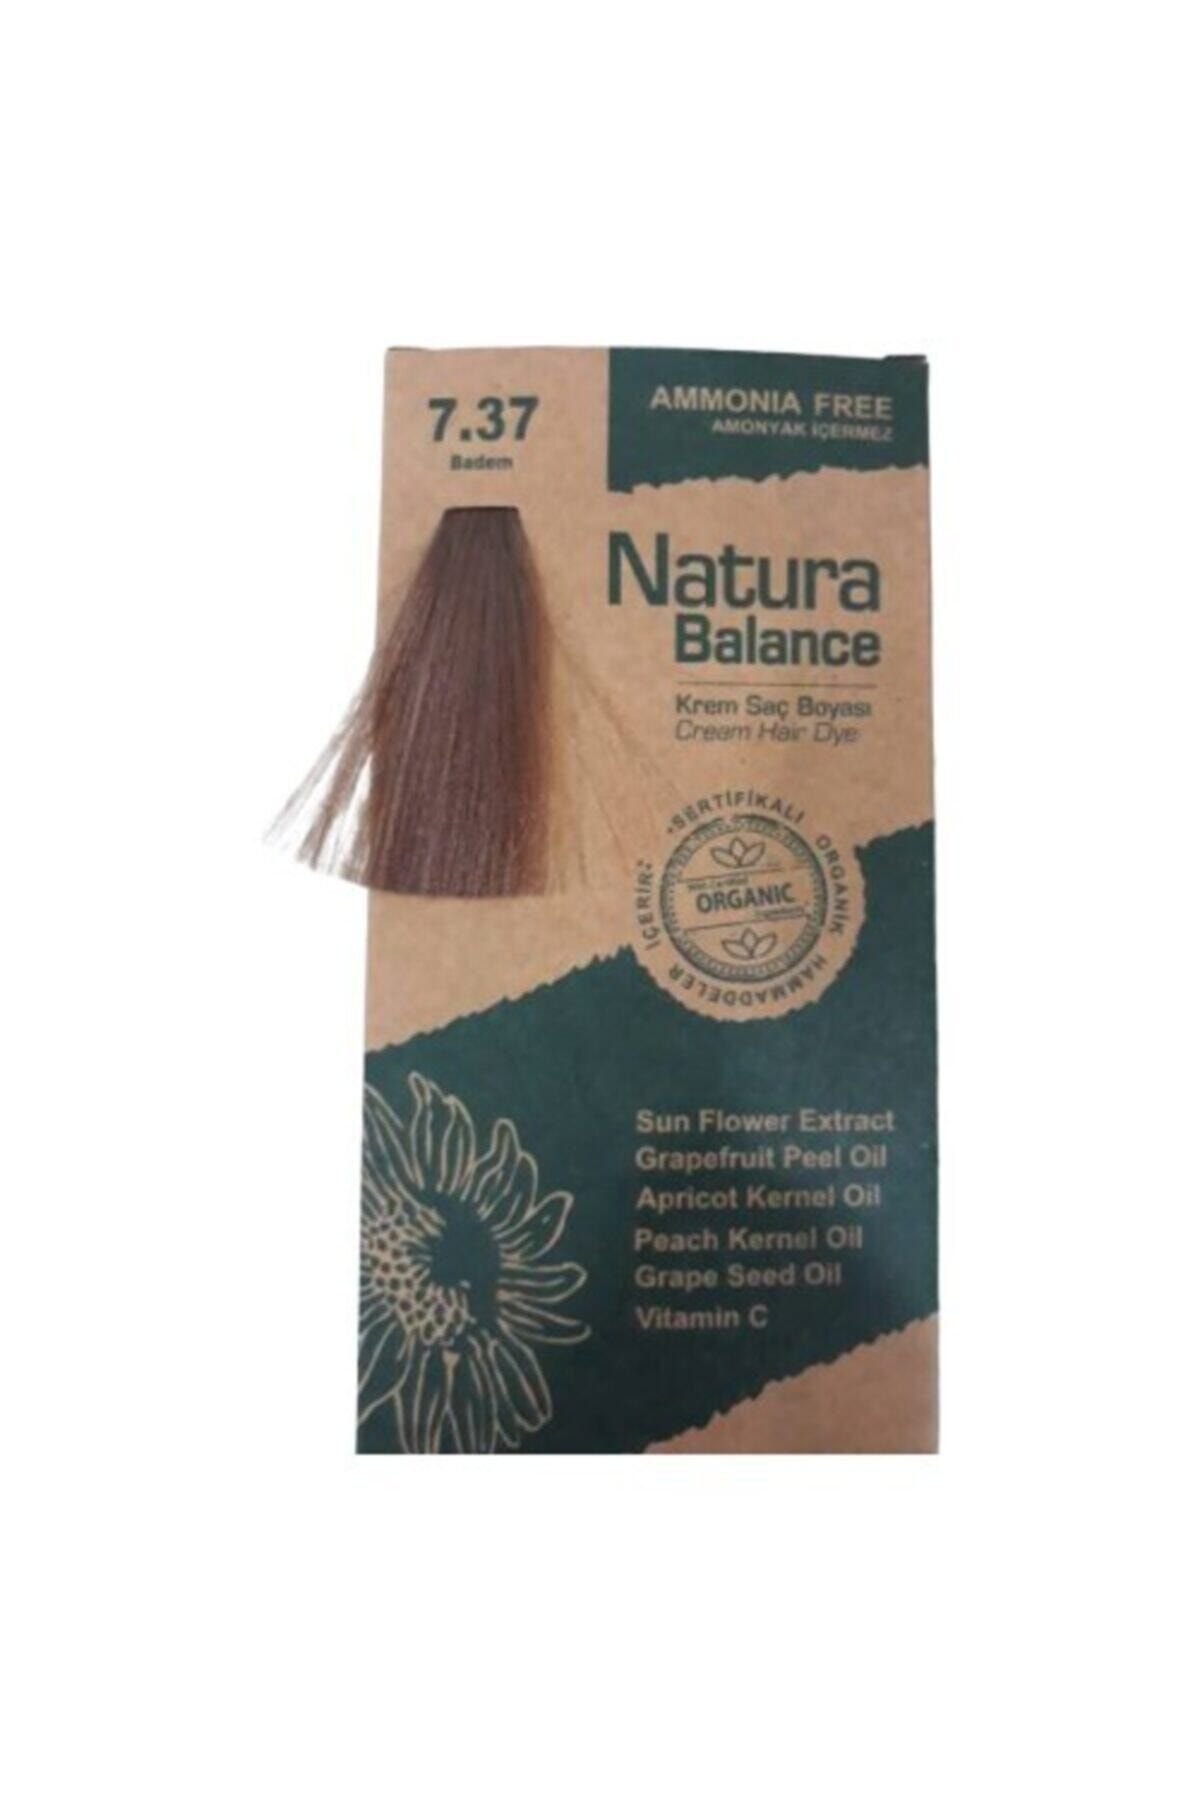 NATURABALANCE Natura Balance - Organik Krem Saç Boyası 7.37 Badem